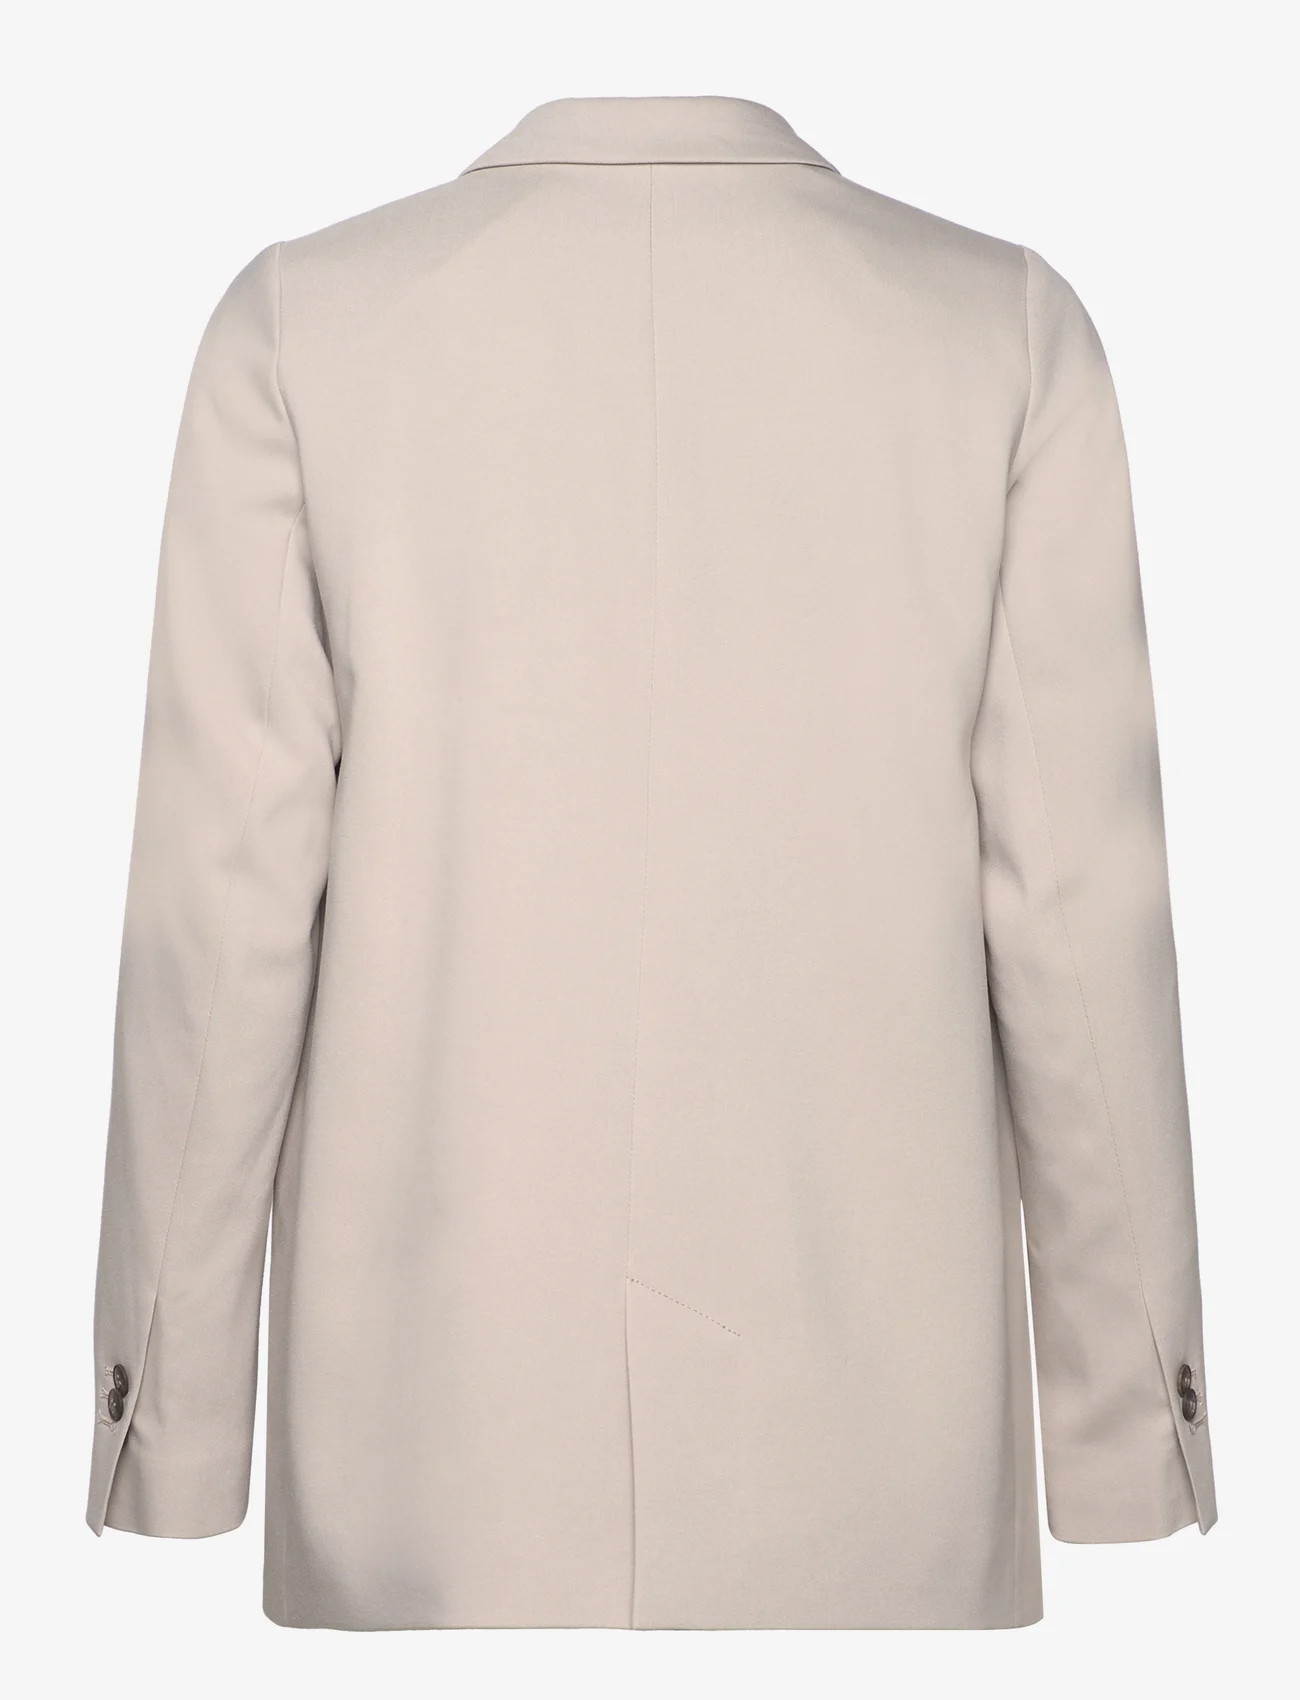 Lexington Clothing - Remi Lyocell Blend Blazer - ballīšu apģērbs par outlet cenām - light gray - 1